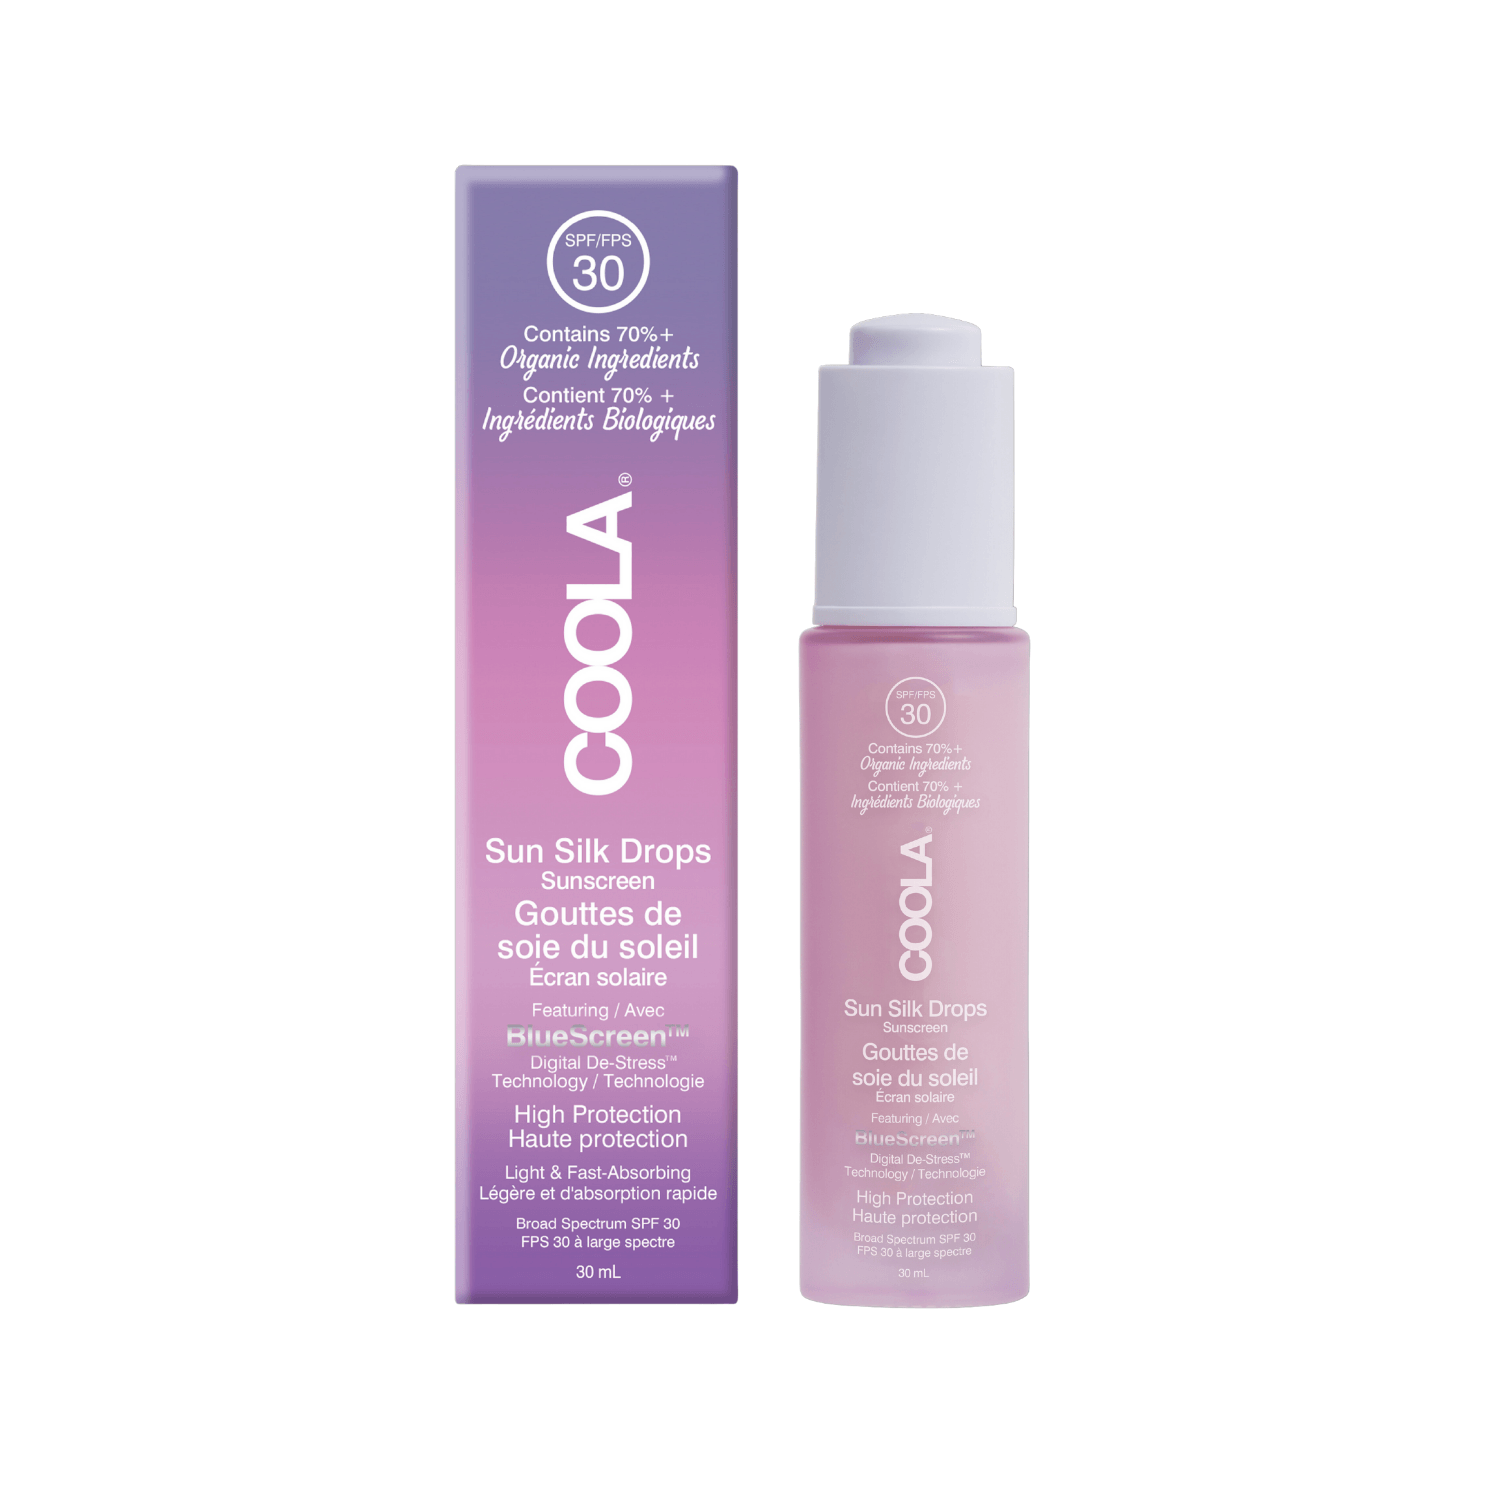 Produktbild von COOLA - Full Spectrum 360° Sun Silk Drops Organic Face Sunscreen SPF30